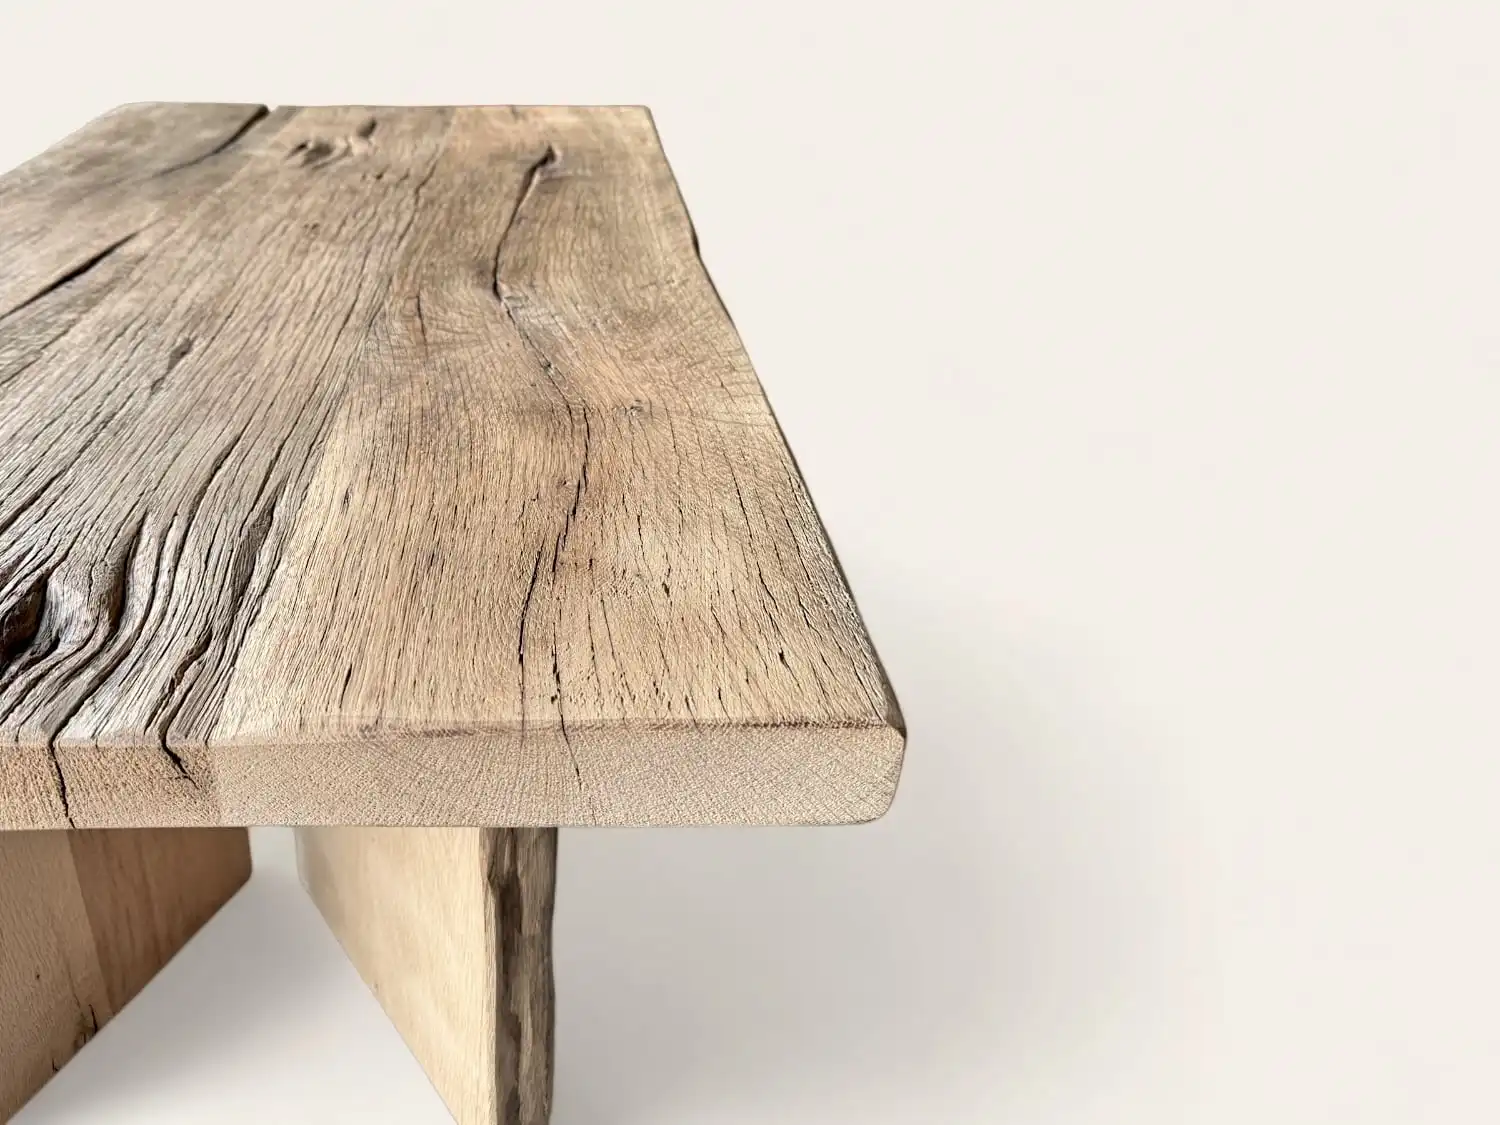 Une table rustique en bois ancien fabriquée à partir de bois récupéré.